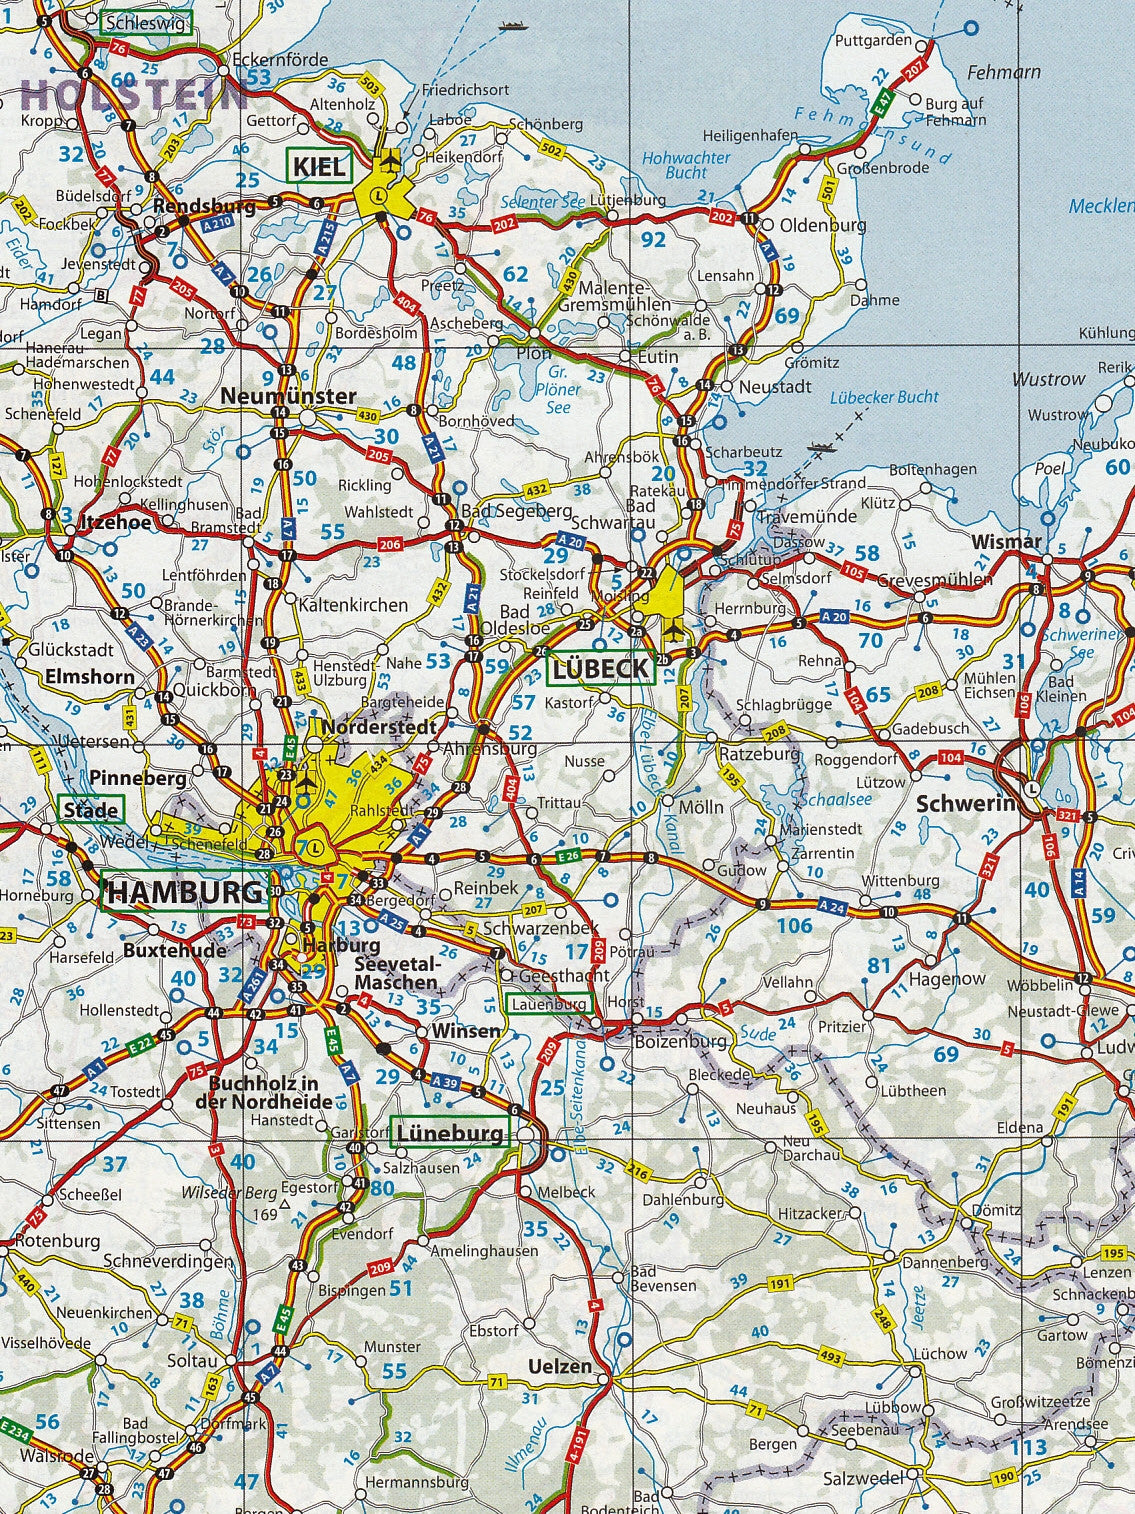 Europe Road Atlas Michelin, Buy Road Atlas of Europe - Mapworld